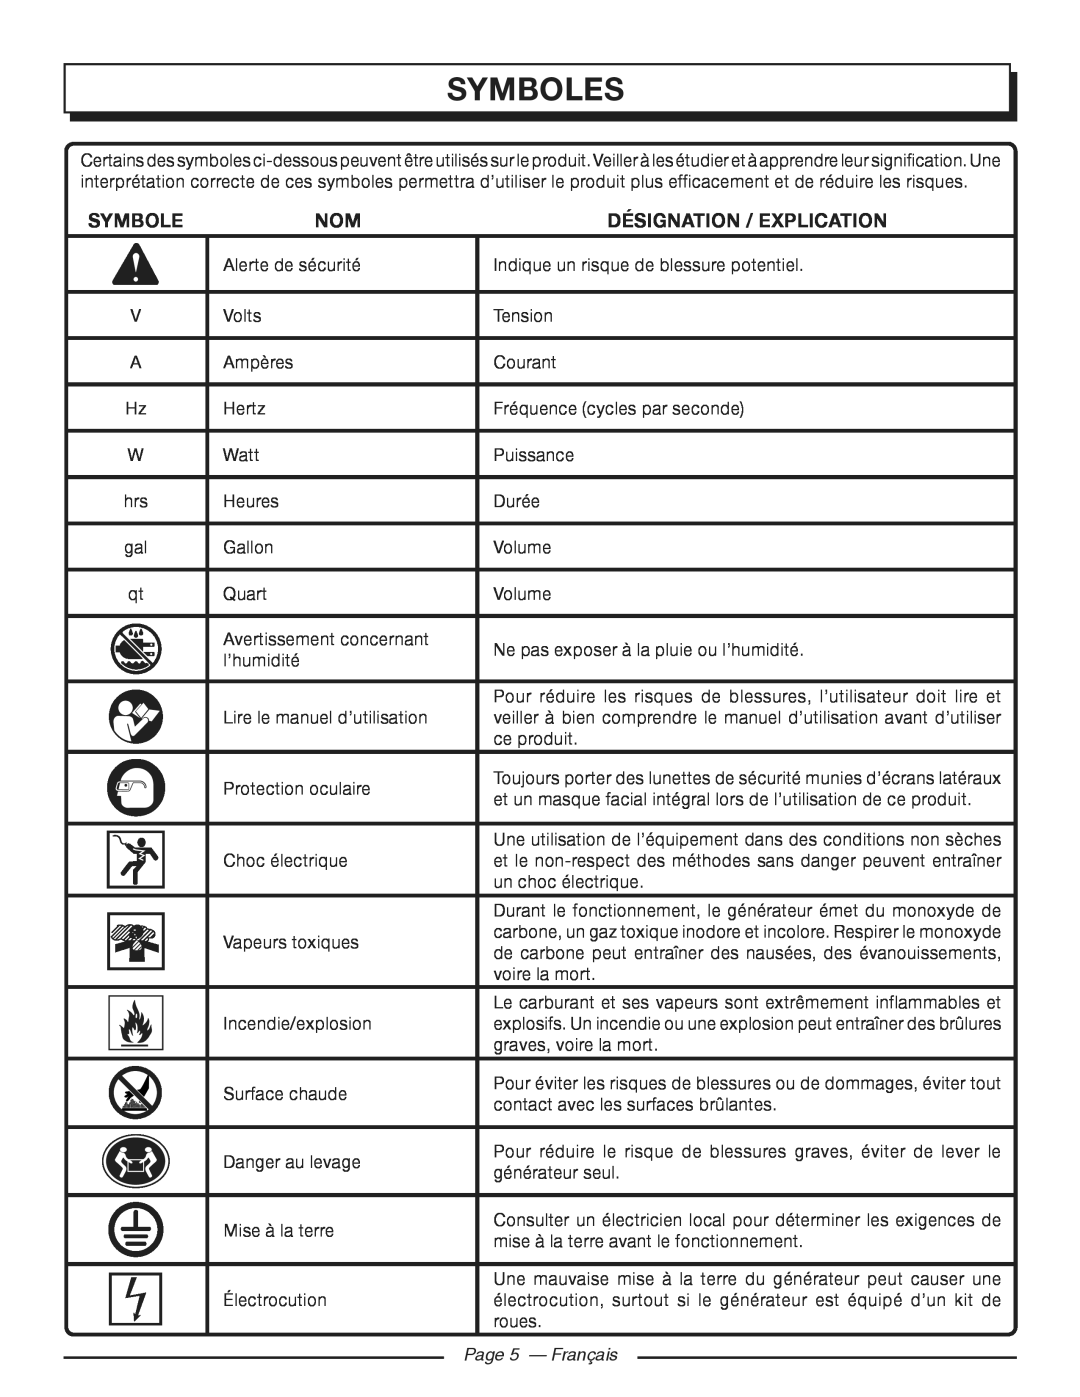 Homelite HGCA3000 manuel dutilisation Symboles, Désignation / Explication, Page 5 - Français 